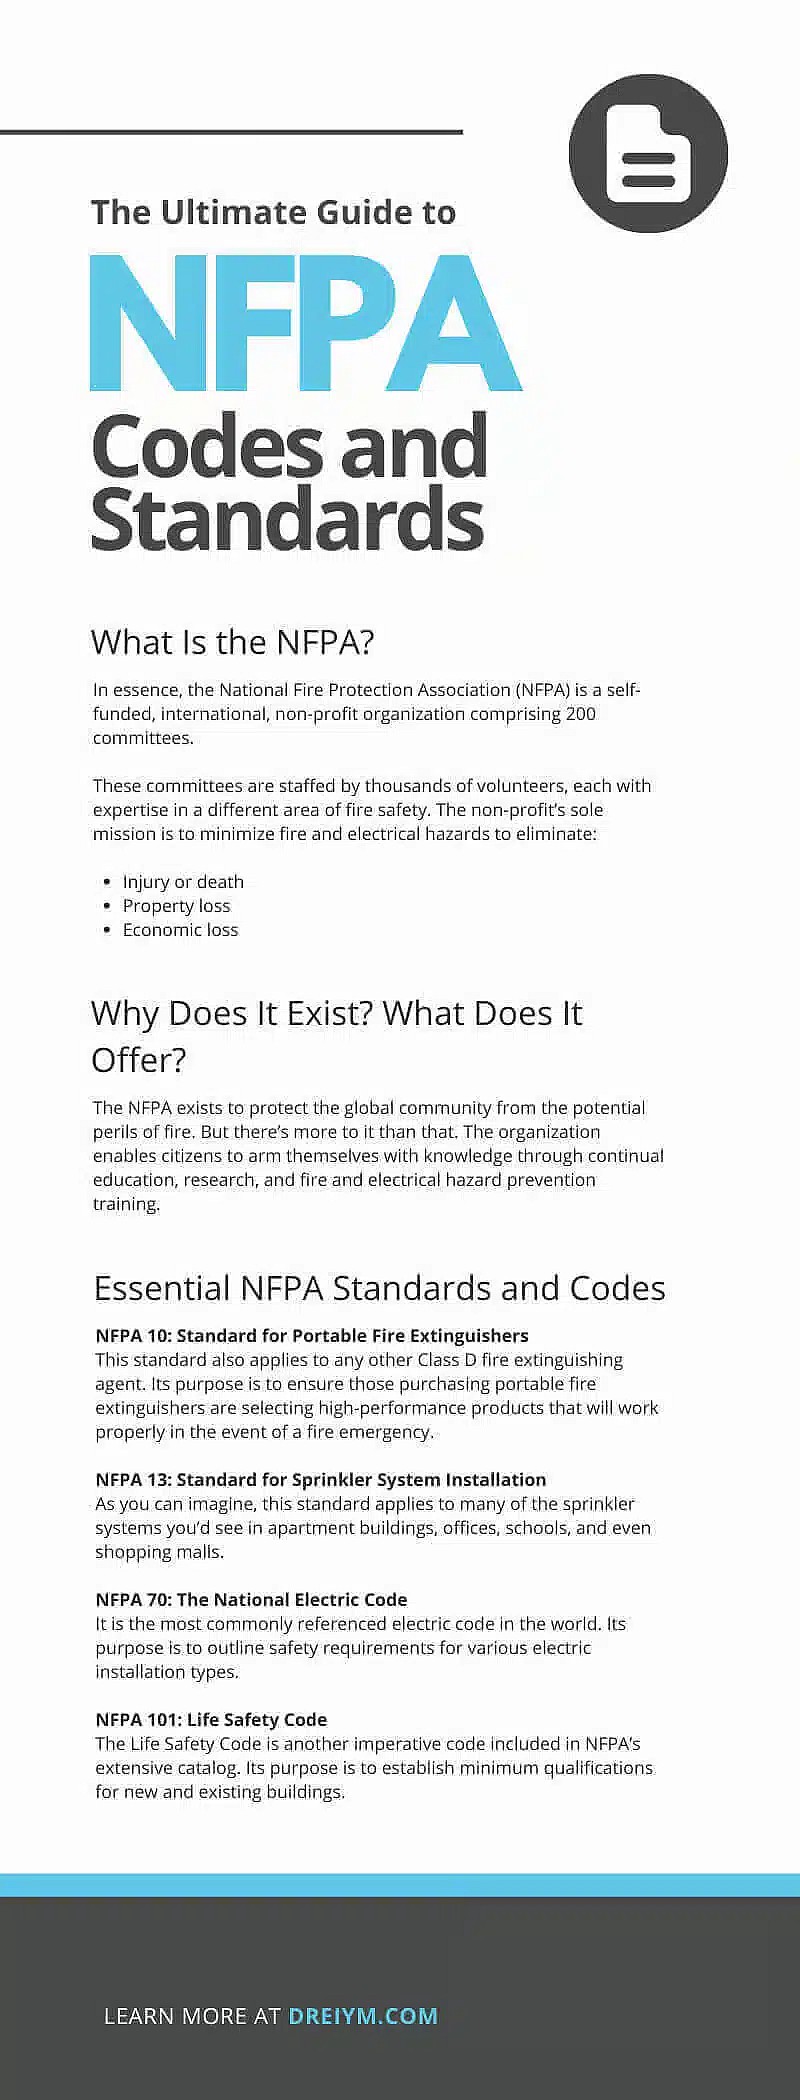 Повний посібник з кодексів і стандартів NFPA